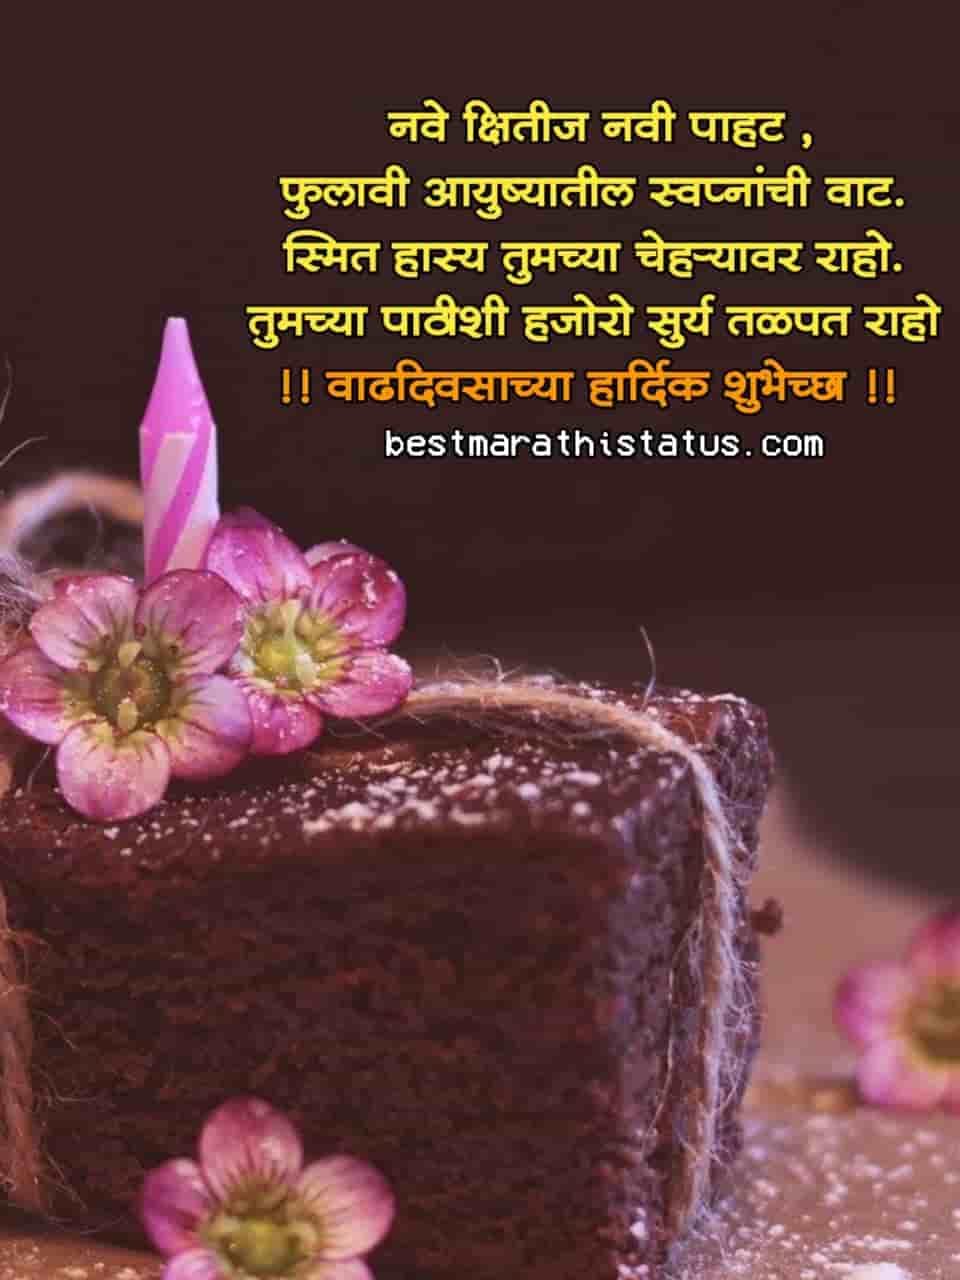 Birthday-Wishes-in-Marathi